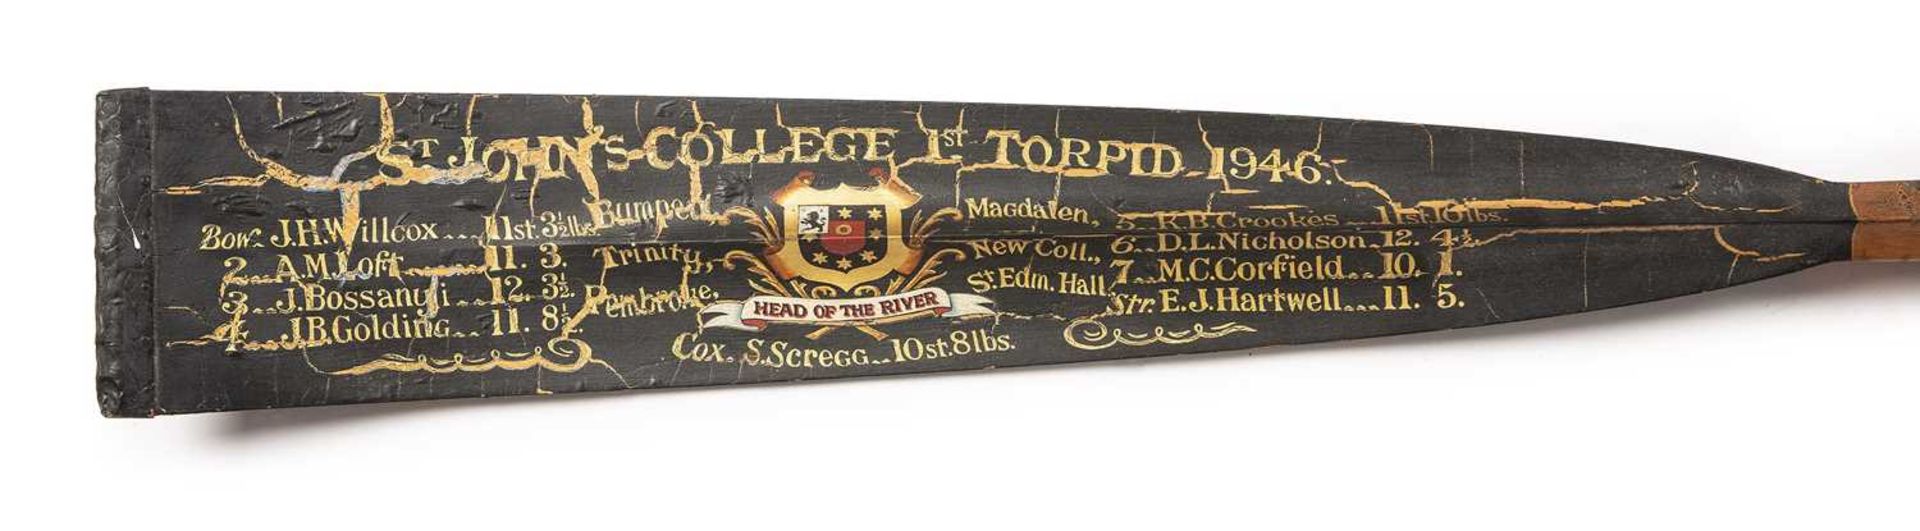 St. John's College 1st Torpid 1946 oar coxed by S.Scregg 369cm in length